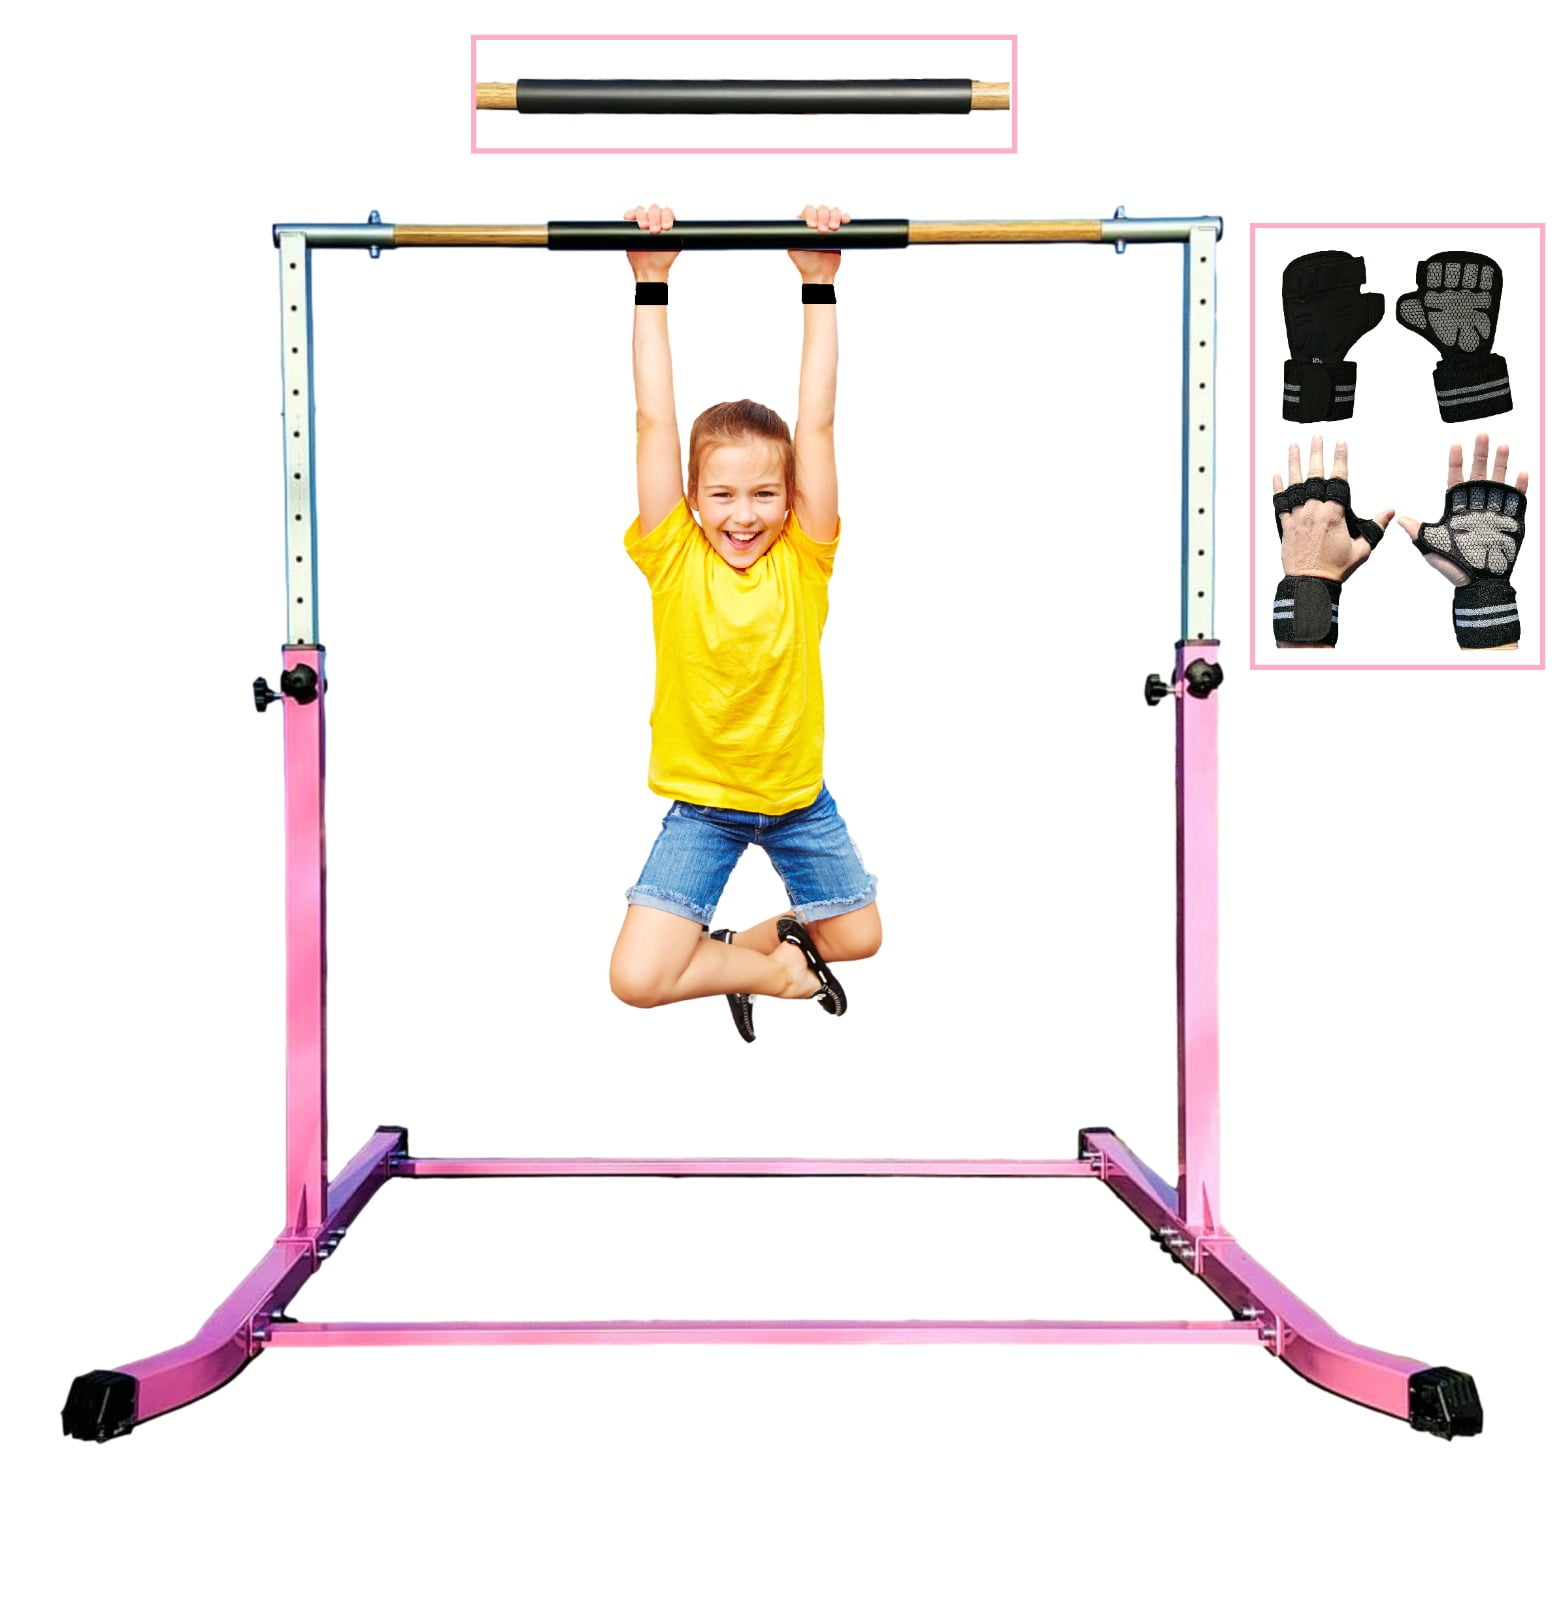 Details about   Adjustable Gymnastics Horizontal Bar For Kids 